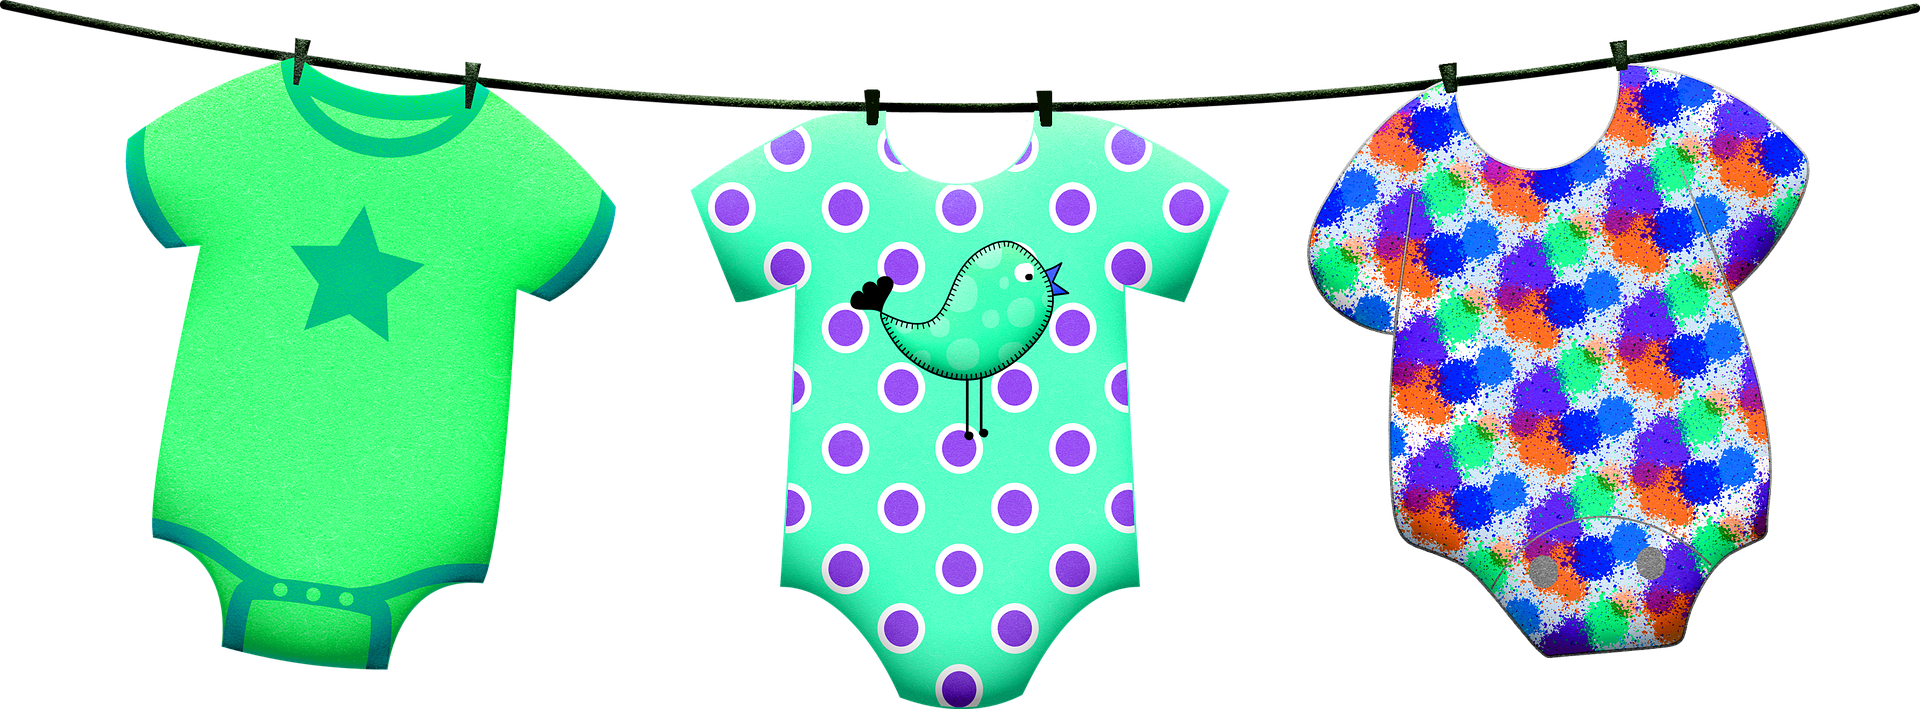 Vauvanvaatteita pyykkinarulla, kuvituskuva. Pixabay.com